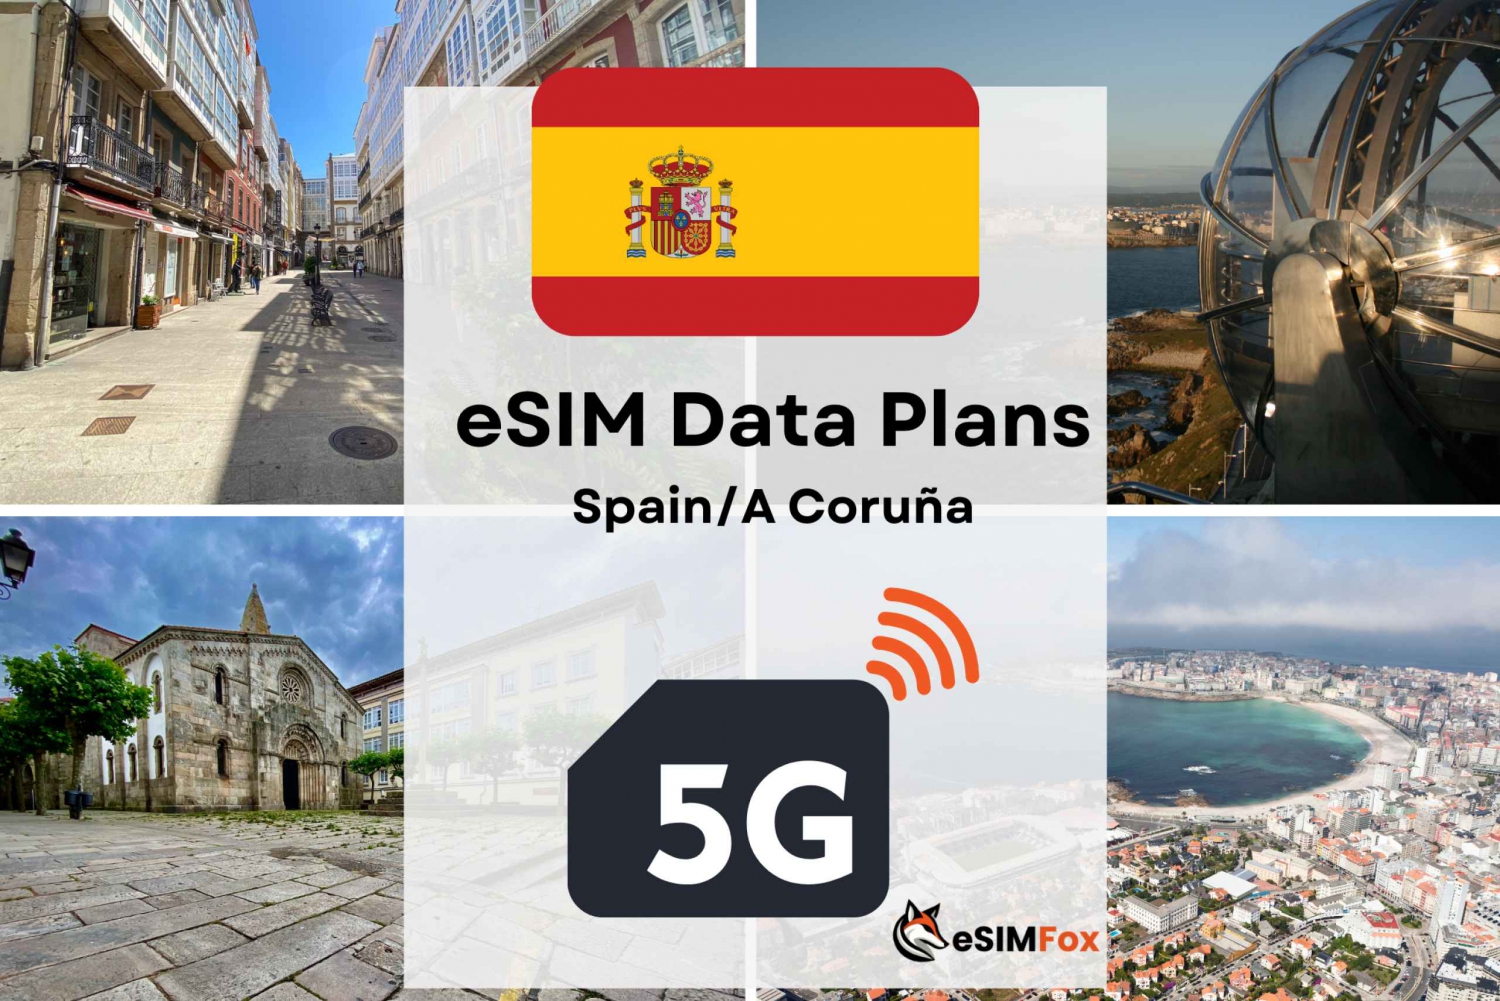 A Coruna: Plano de dados de Internet eSIM para a Espanha 4G/5G